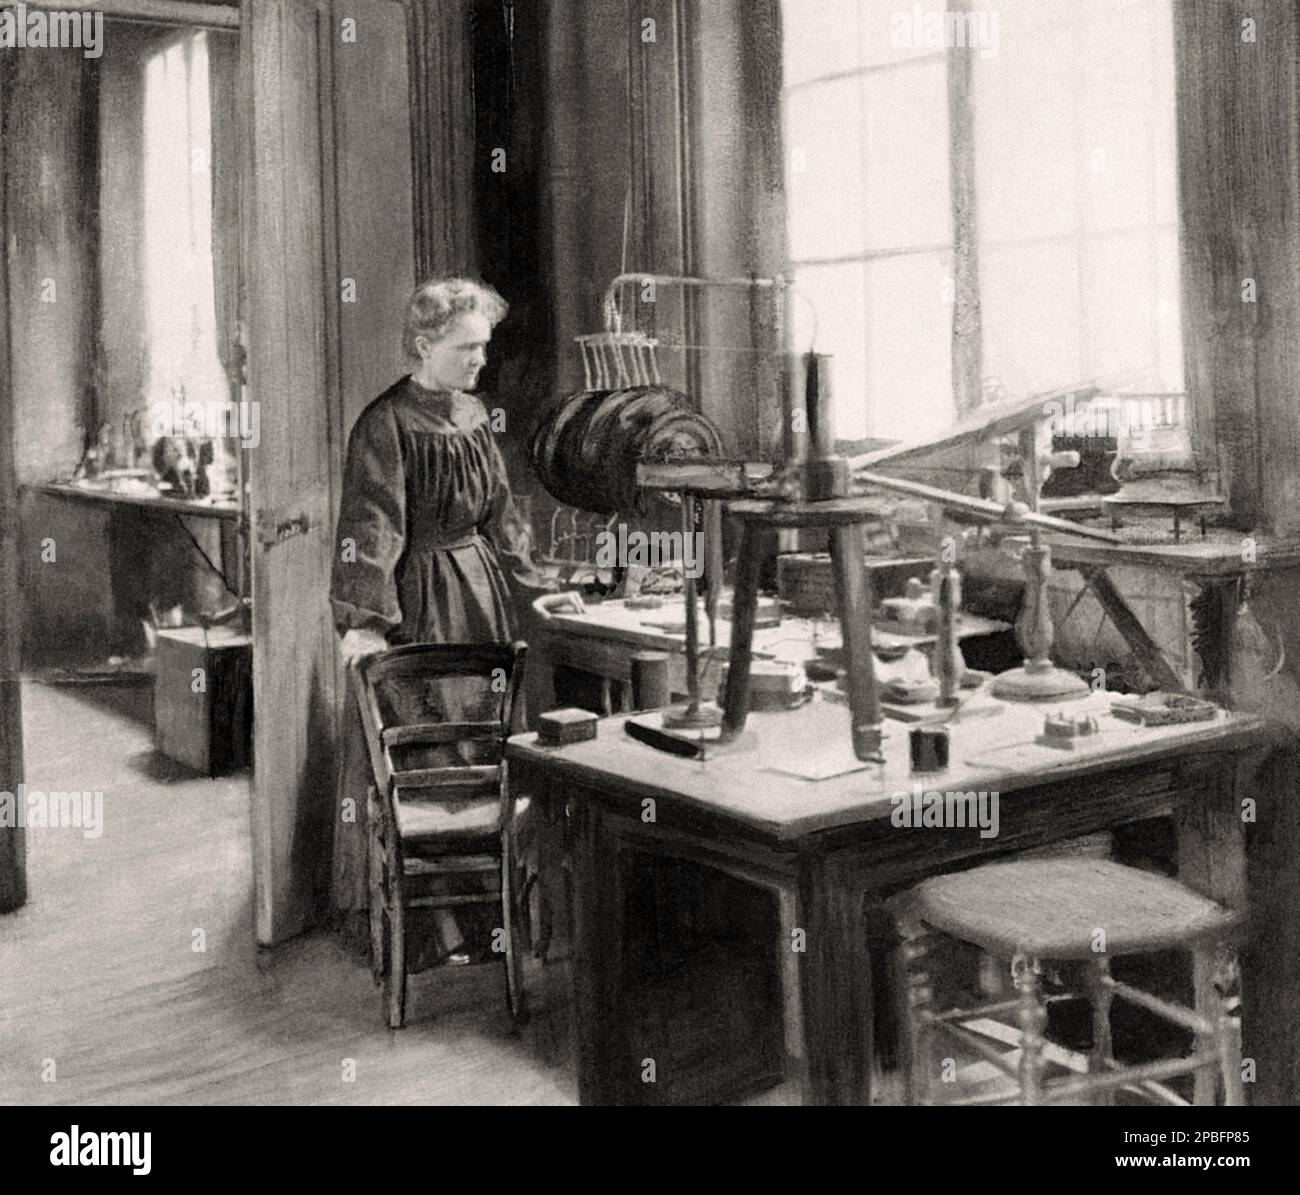 1900 ca , Parigi , Francia :il celebre fisico e chimico Marie CURIE ( Maria Sklodowska , 1867 - 1934 ). Sposato con il fisico PIERRE CURIE ( 1859 – 1906 ), pioniere della cristallografia, del magnetismo, della piezoelettricità e della radioattività . Ha condiviso il Premio Nobel 1903 in fisica con la moglie Marie Curie , E Henri Becquerel,' in riconoscimento degli straordinari servizi che hanno reso grazie alle loro ricerche congiunte sui fenomeni radiologici scoperti dal professor Henri Becquerel' - foto storiche - foto storica - scienziato - scienziato - ritratto - ritratto - F. Foto Stock